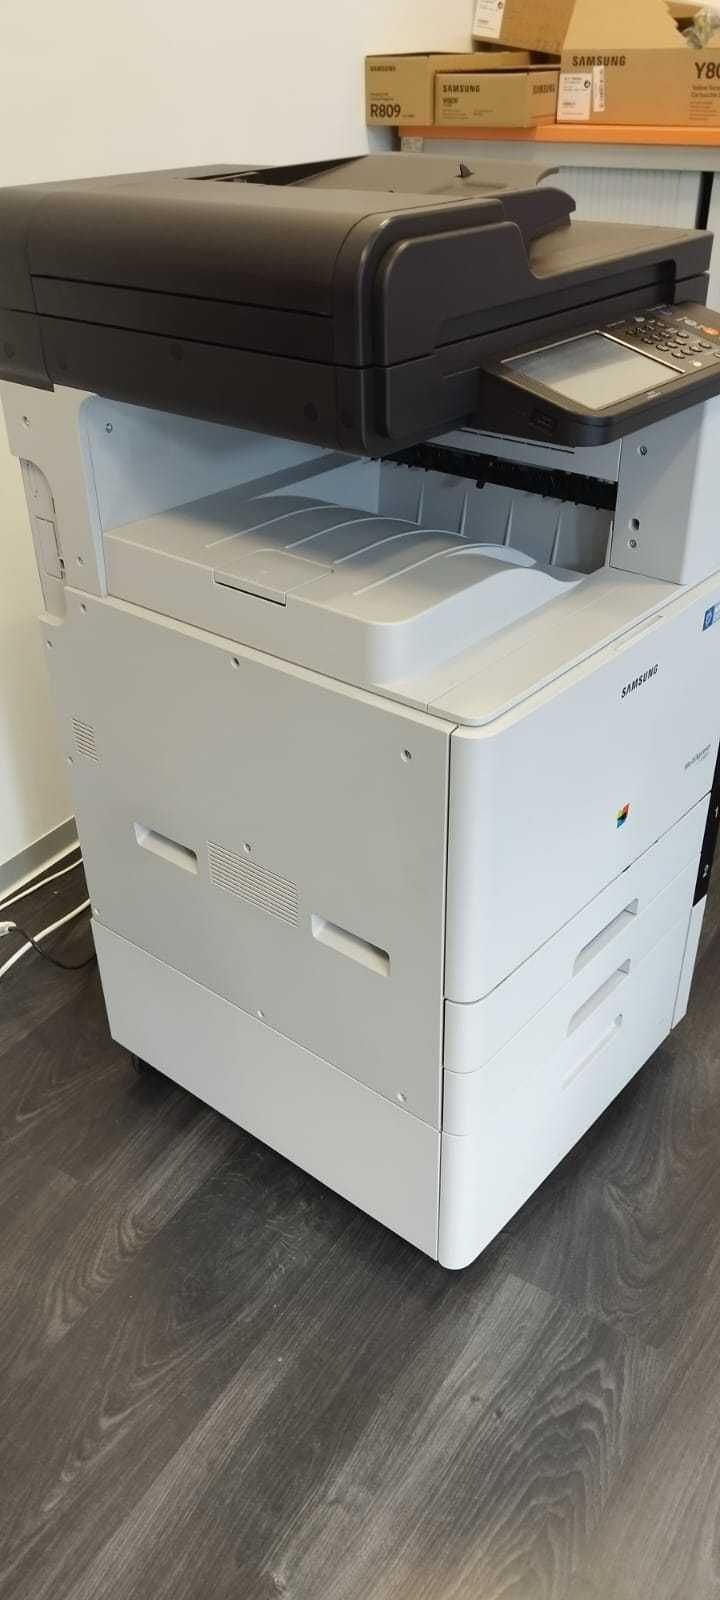 Samsung CLX-9251 Impressora, scaner, fax, fotocopiadora toner a cores